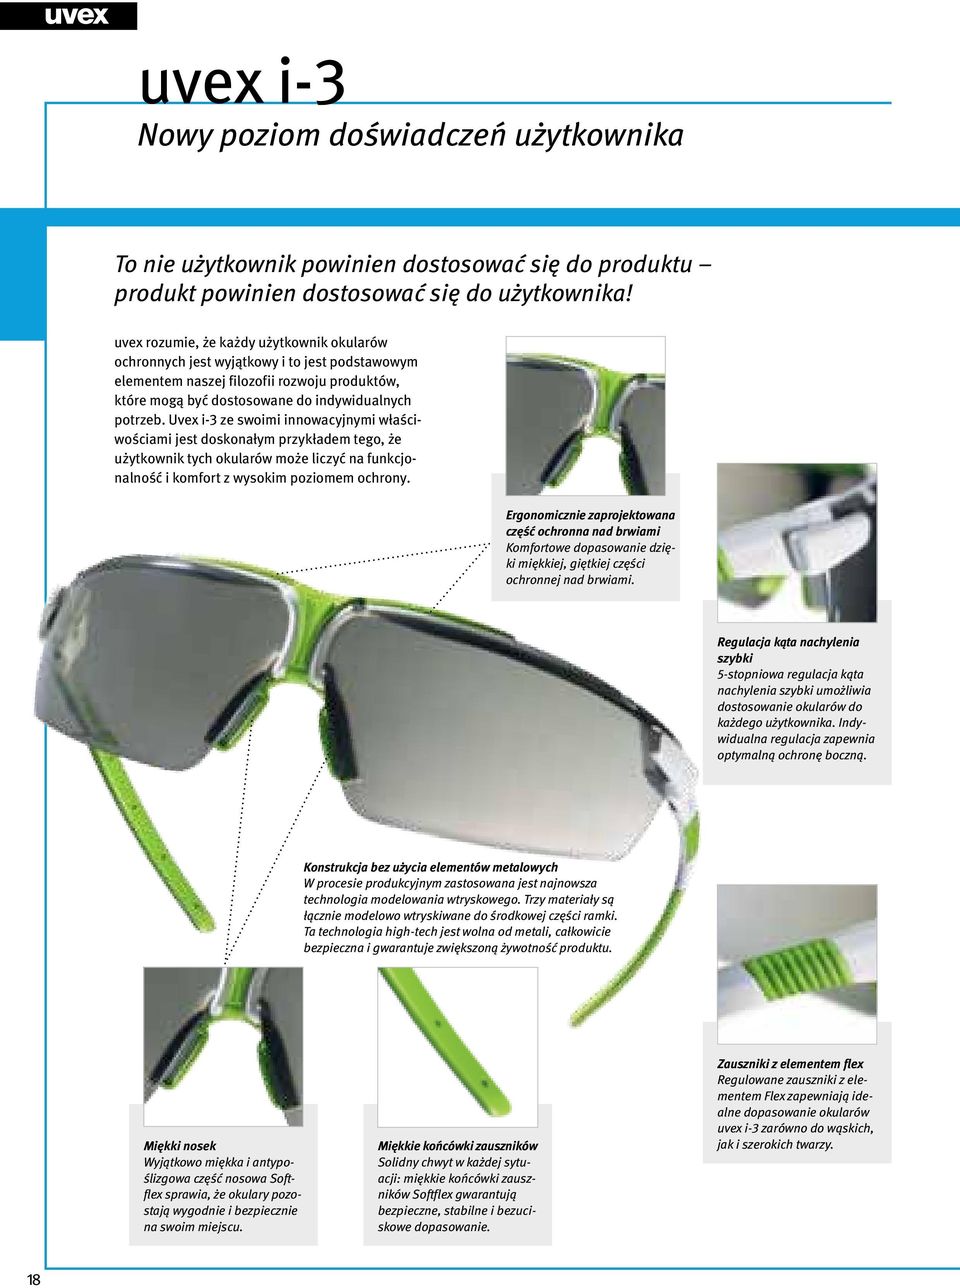 Uvex i-3 ze swoimi innowacyjnymi właściwościami jest doskonałym przykładem tego, że użytkownik tych okularów może liczyć na funkcjonalność i komfort z wysokim poziomem ochrony.